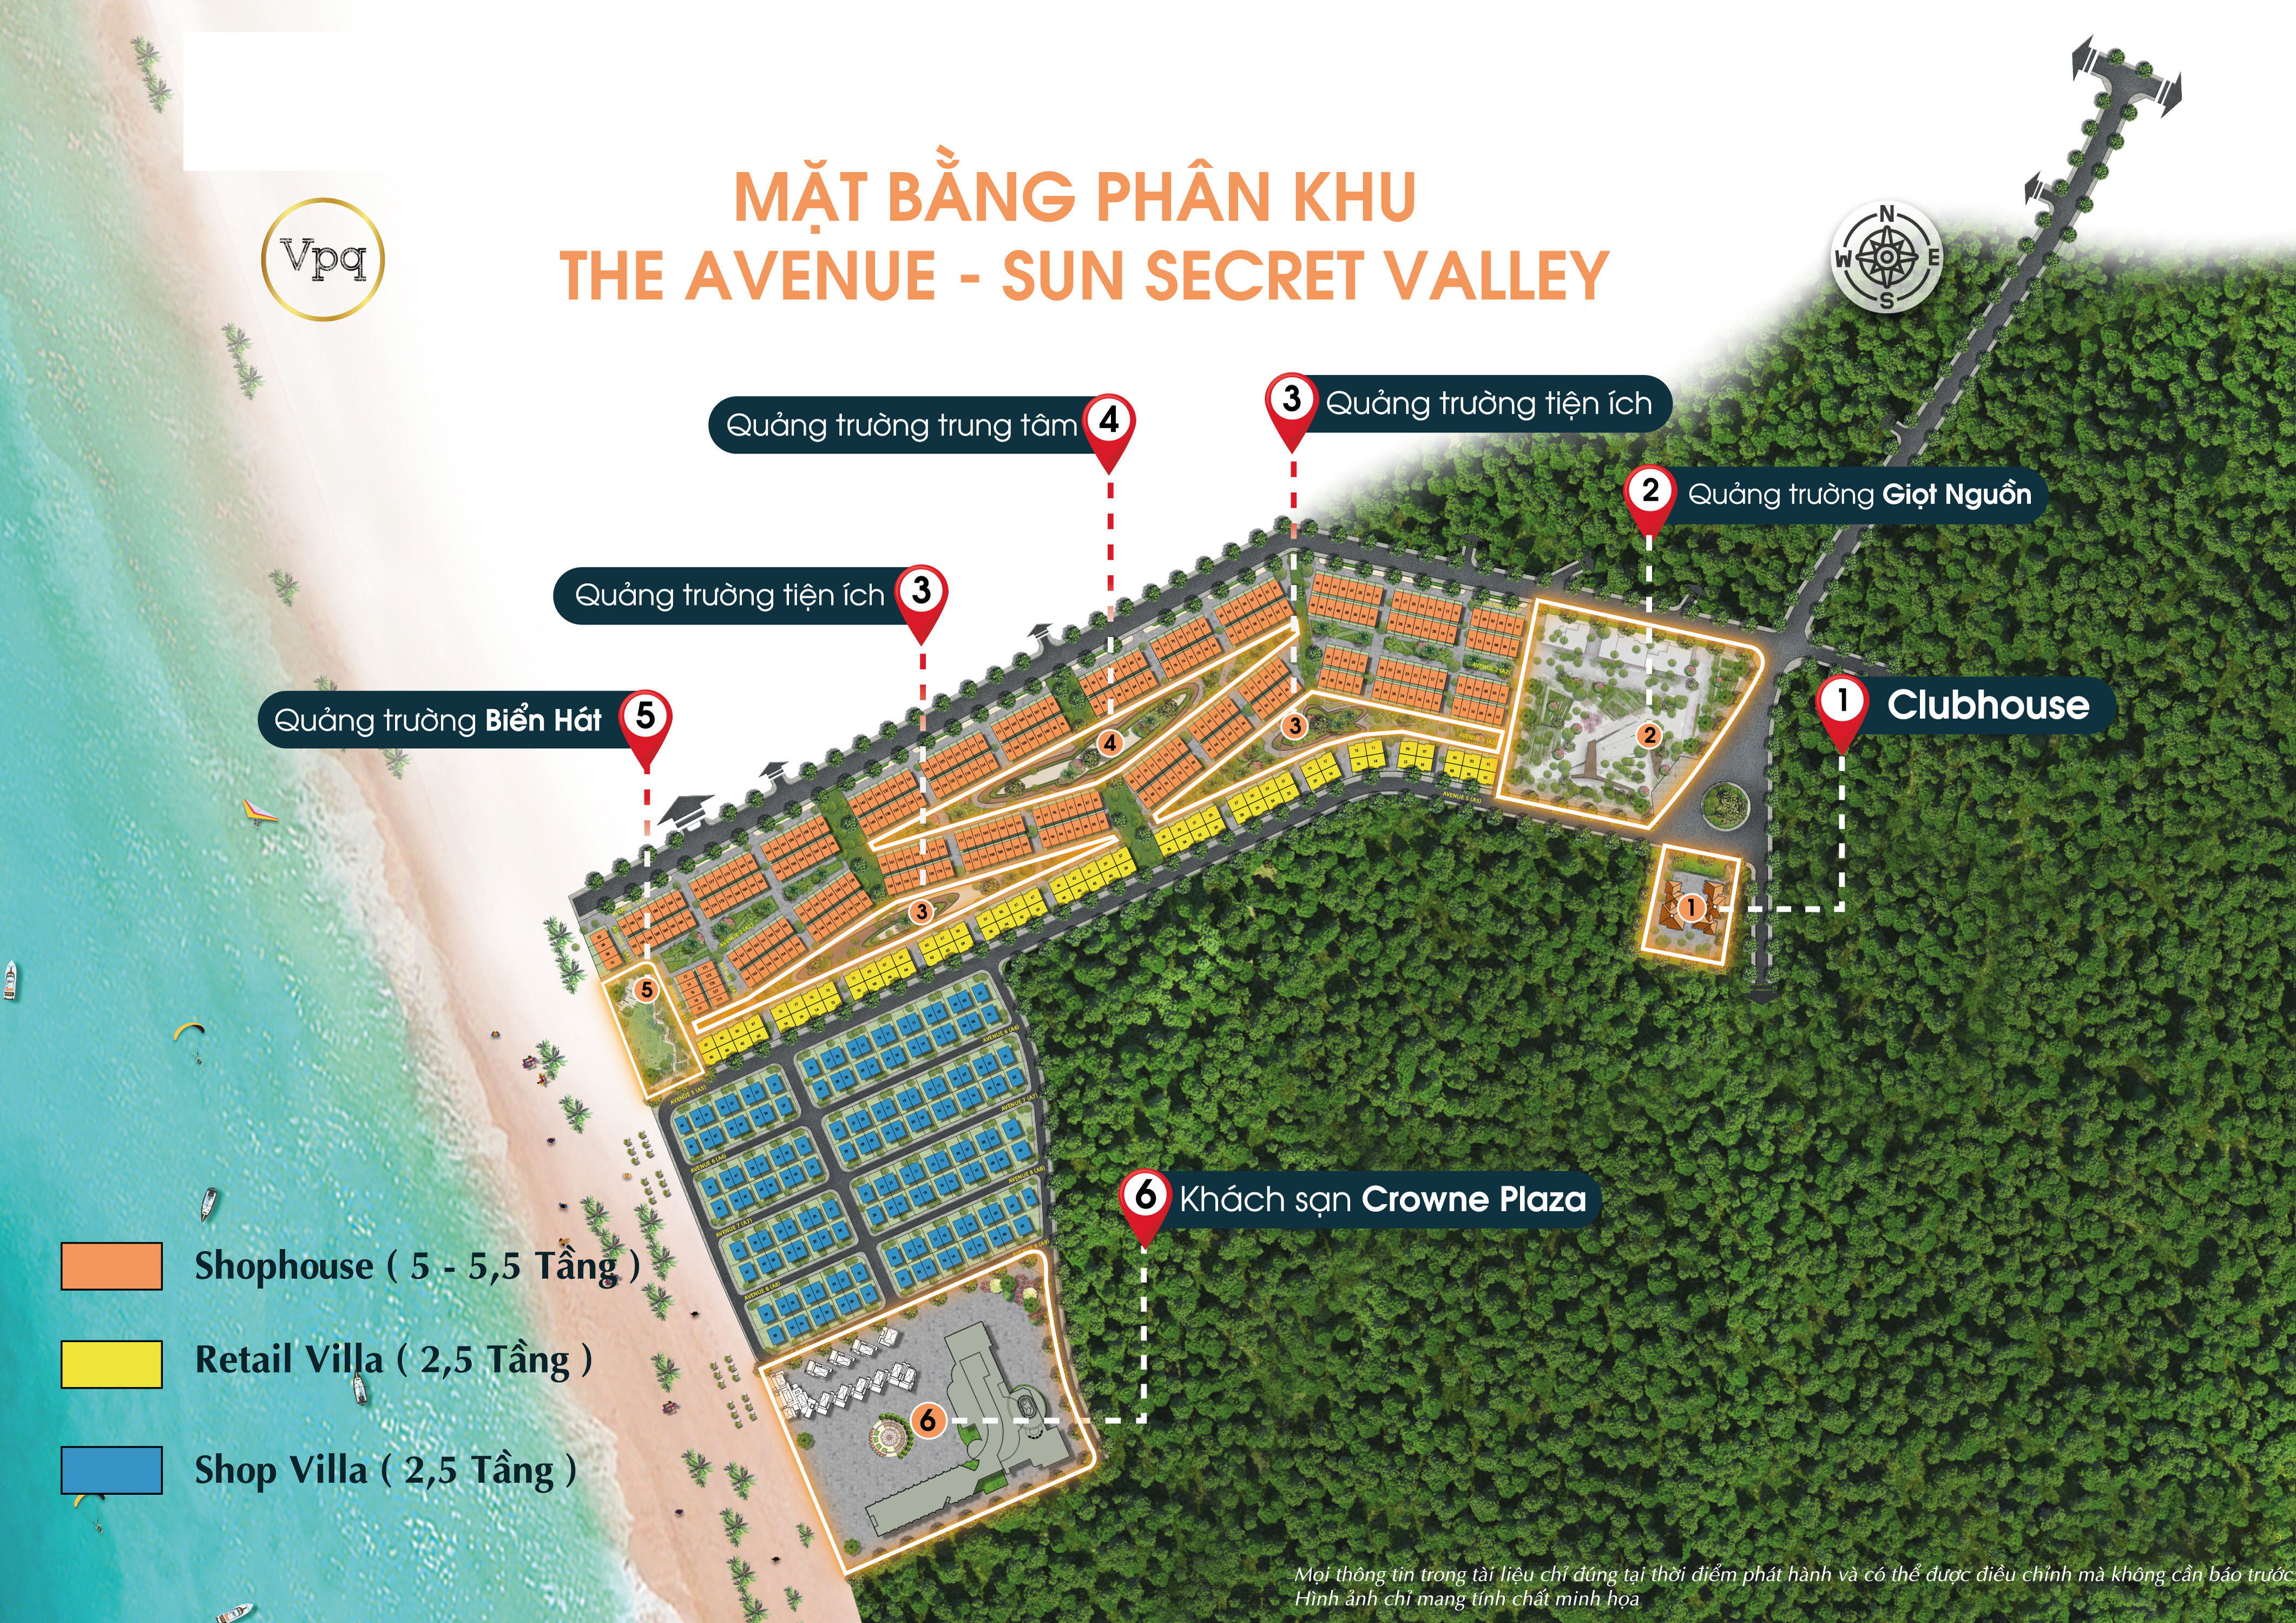 Tổng mặt bằng phân khu The Avenue Sun Secret Valley và cơ cấu sản phẩm